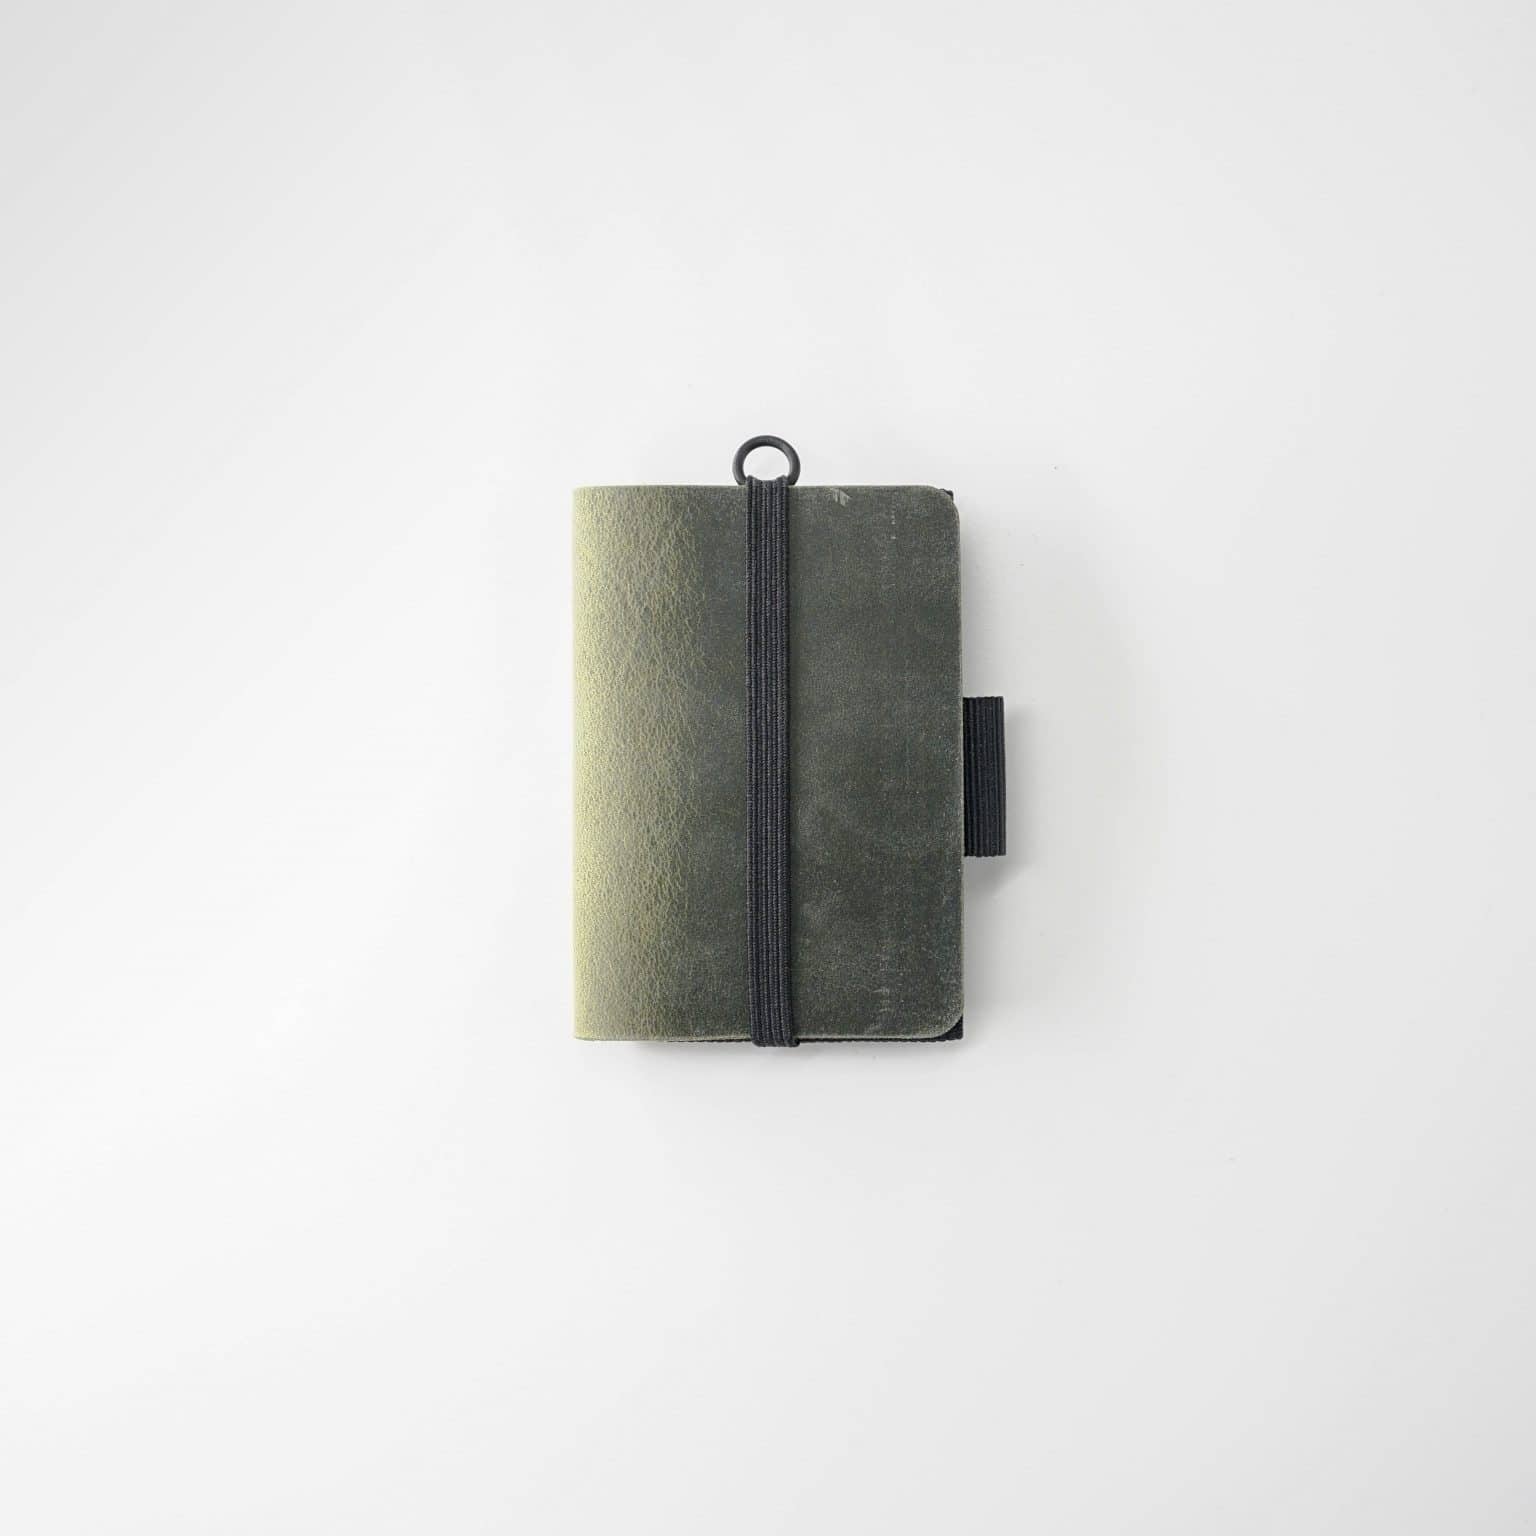 Contemporaneo minimalist portafoglio dallo stile geometrico.